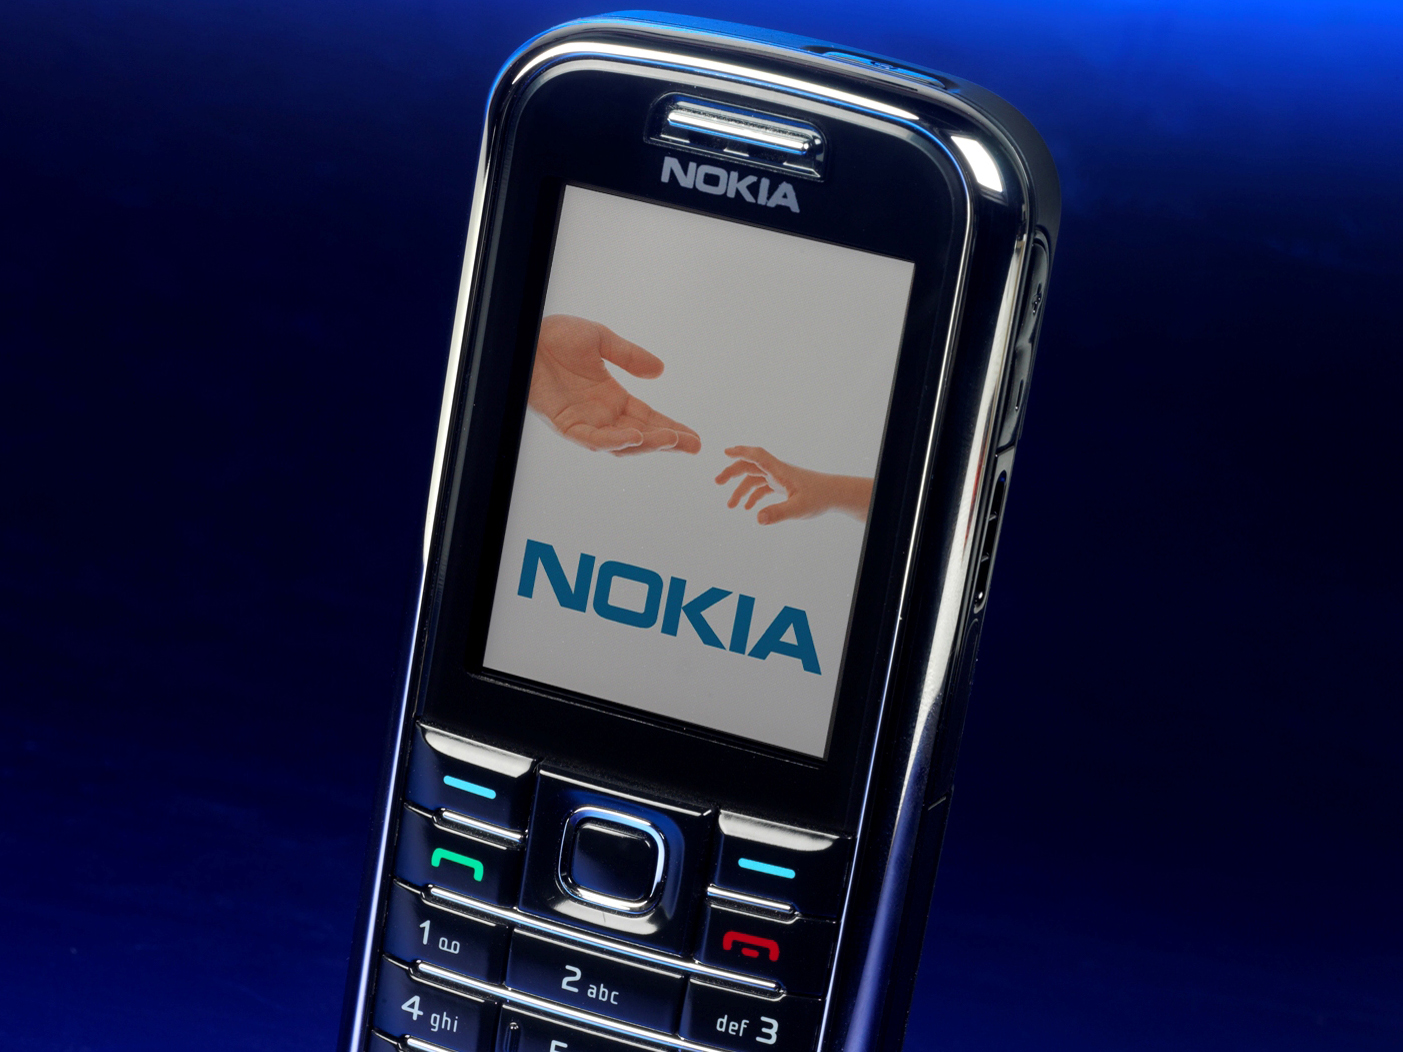 Картинка телефона нокиа. Nokia 6233 Classic. Nokia 6233 XPRESSMUSIC. 6233 Nokia Nokia. Нокия 6233 Классик.